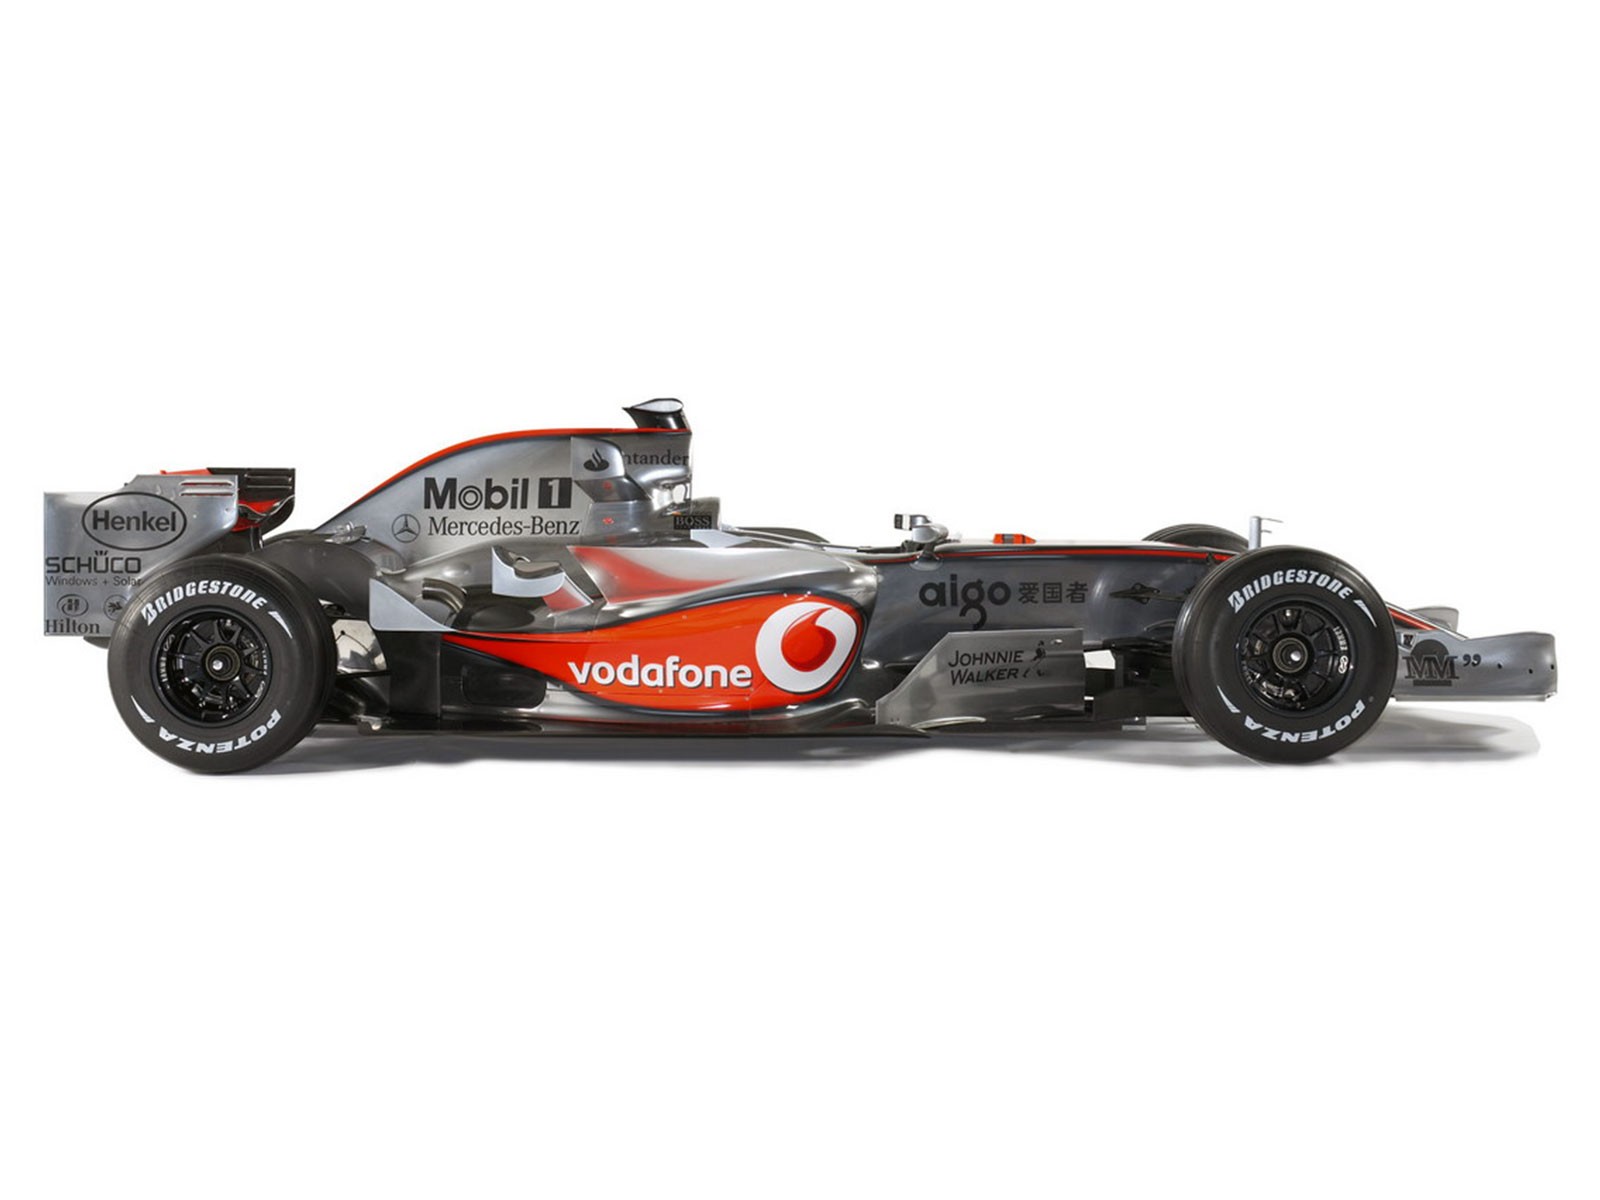  F1のレースのHD画像は、アルバム #12 - 1600x1200